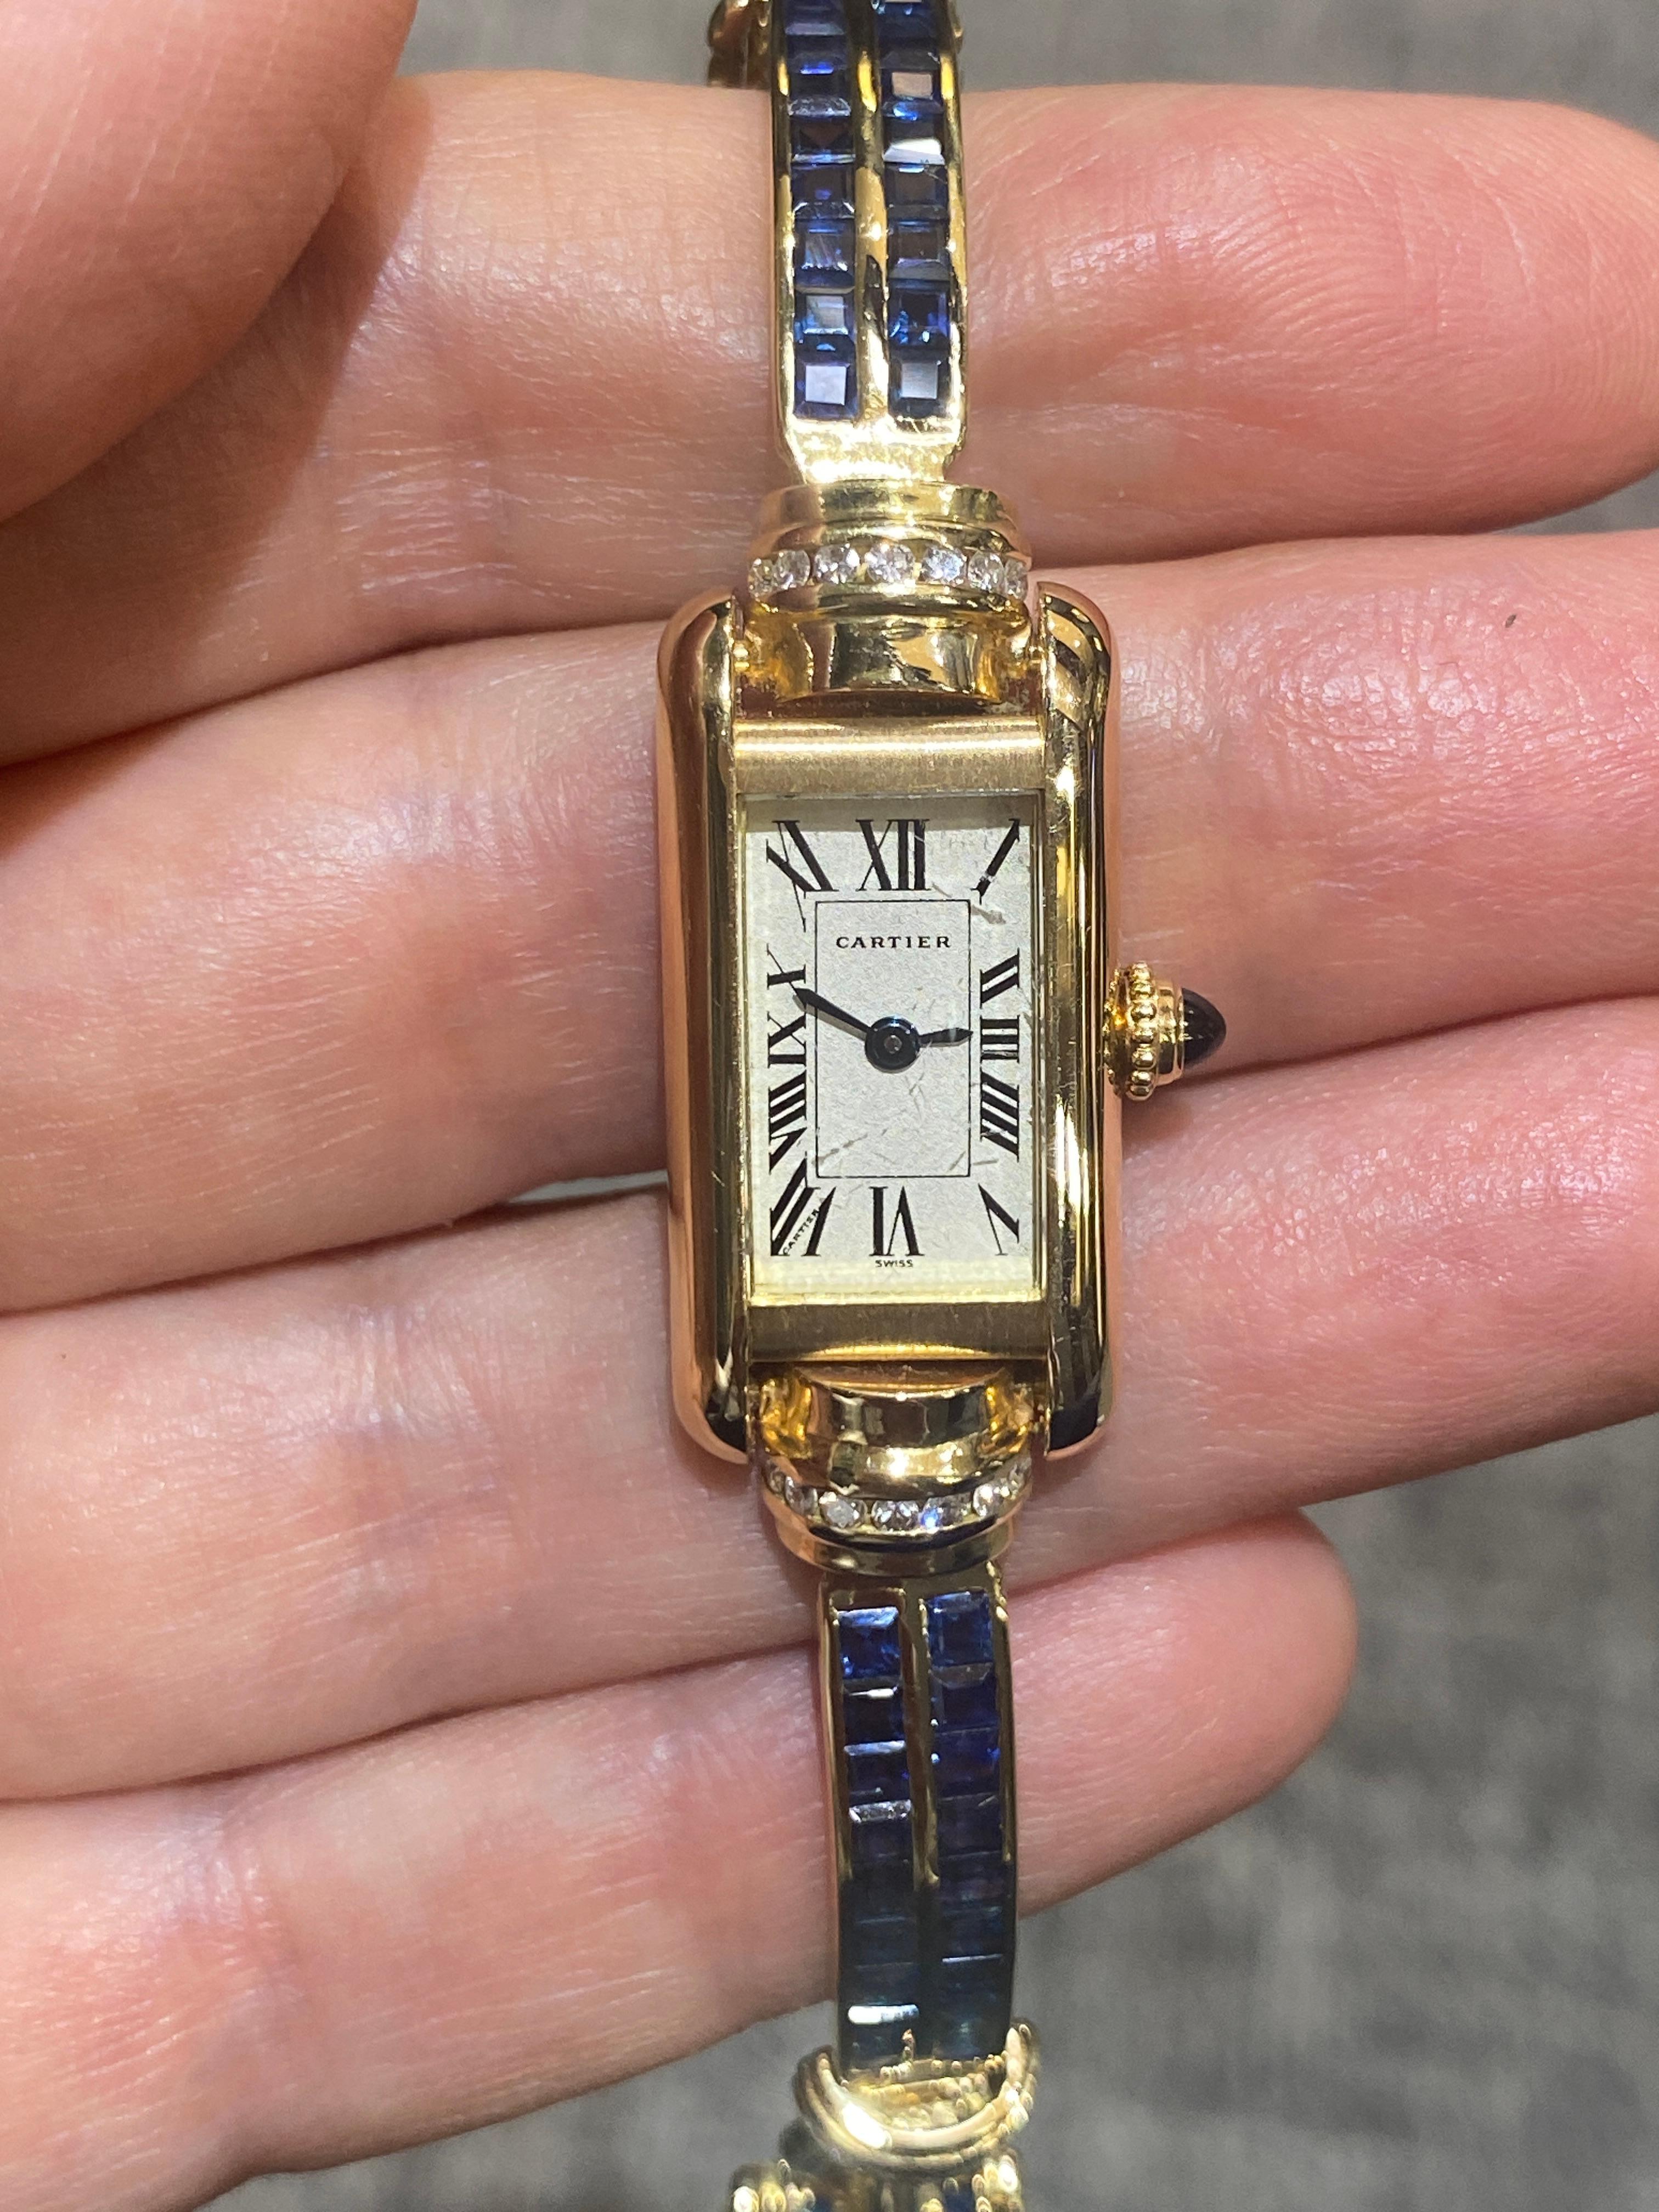 Diese seltene Cartier Tank Uhr hat ein 18 Karat Goldarmband, das mit runden Diamanten und unsichtbar gefassten Saphiren verziert ist. Die Länge des Armbands beträgt 17 cm. Es ist ein atemberaubendes Stück.